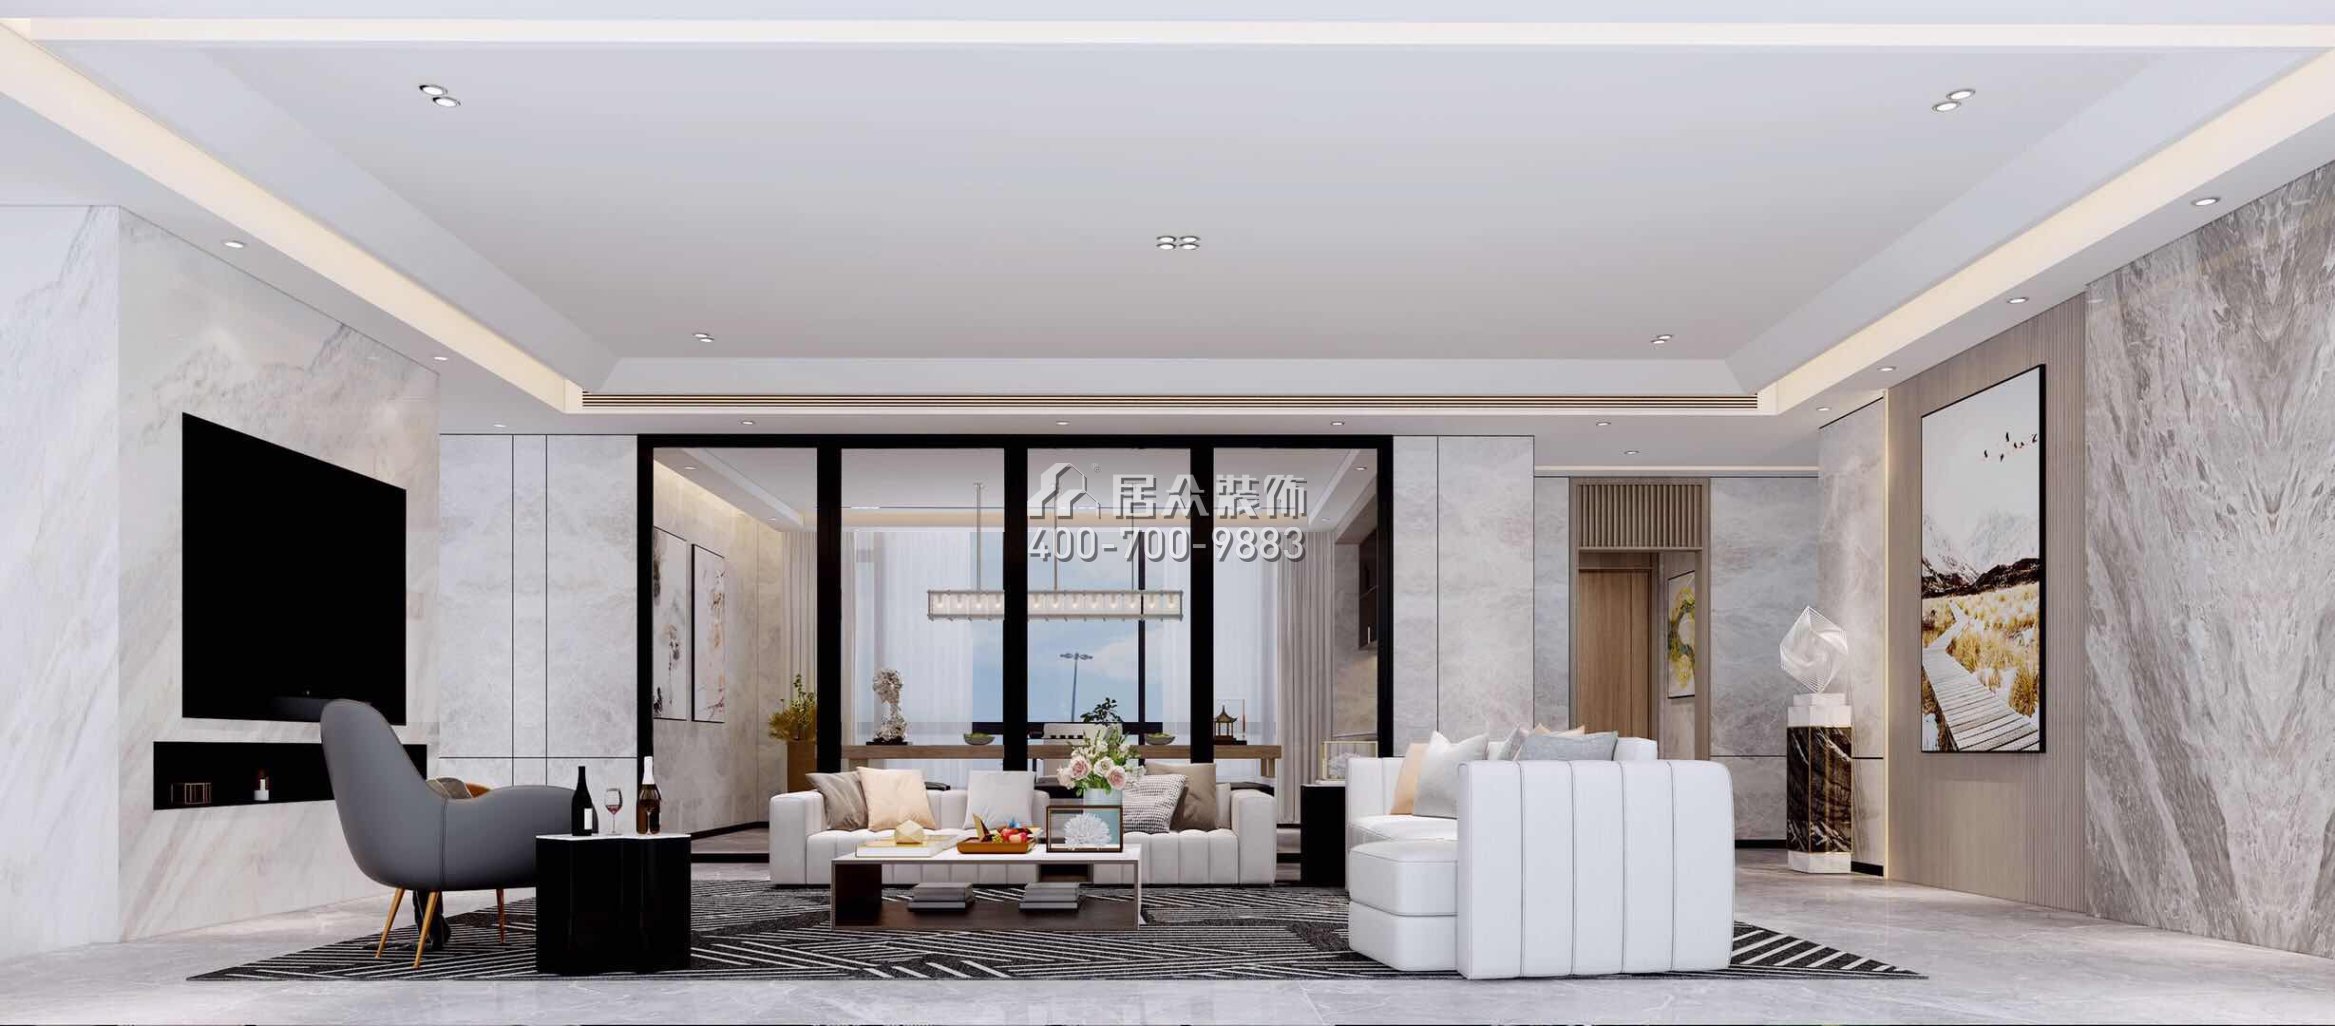 自建房300平方米現代簡約風格平層戶型客廳裝修效果圖